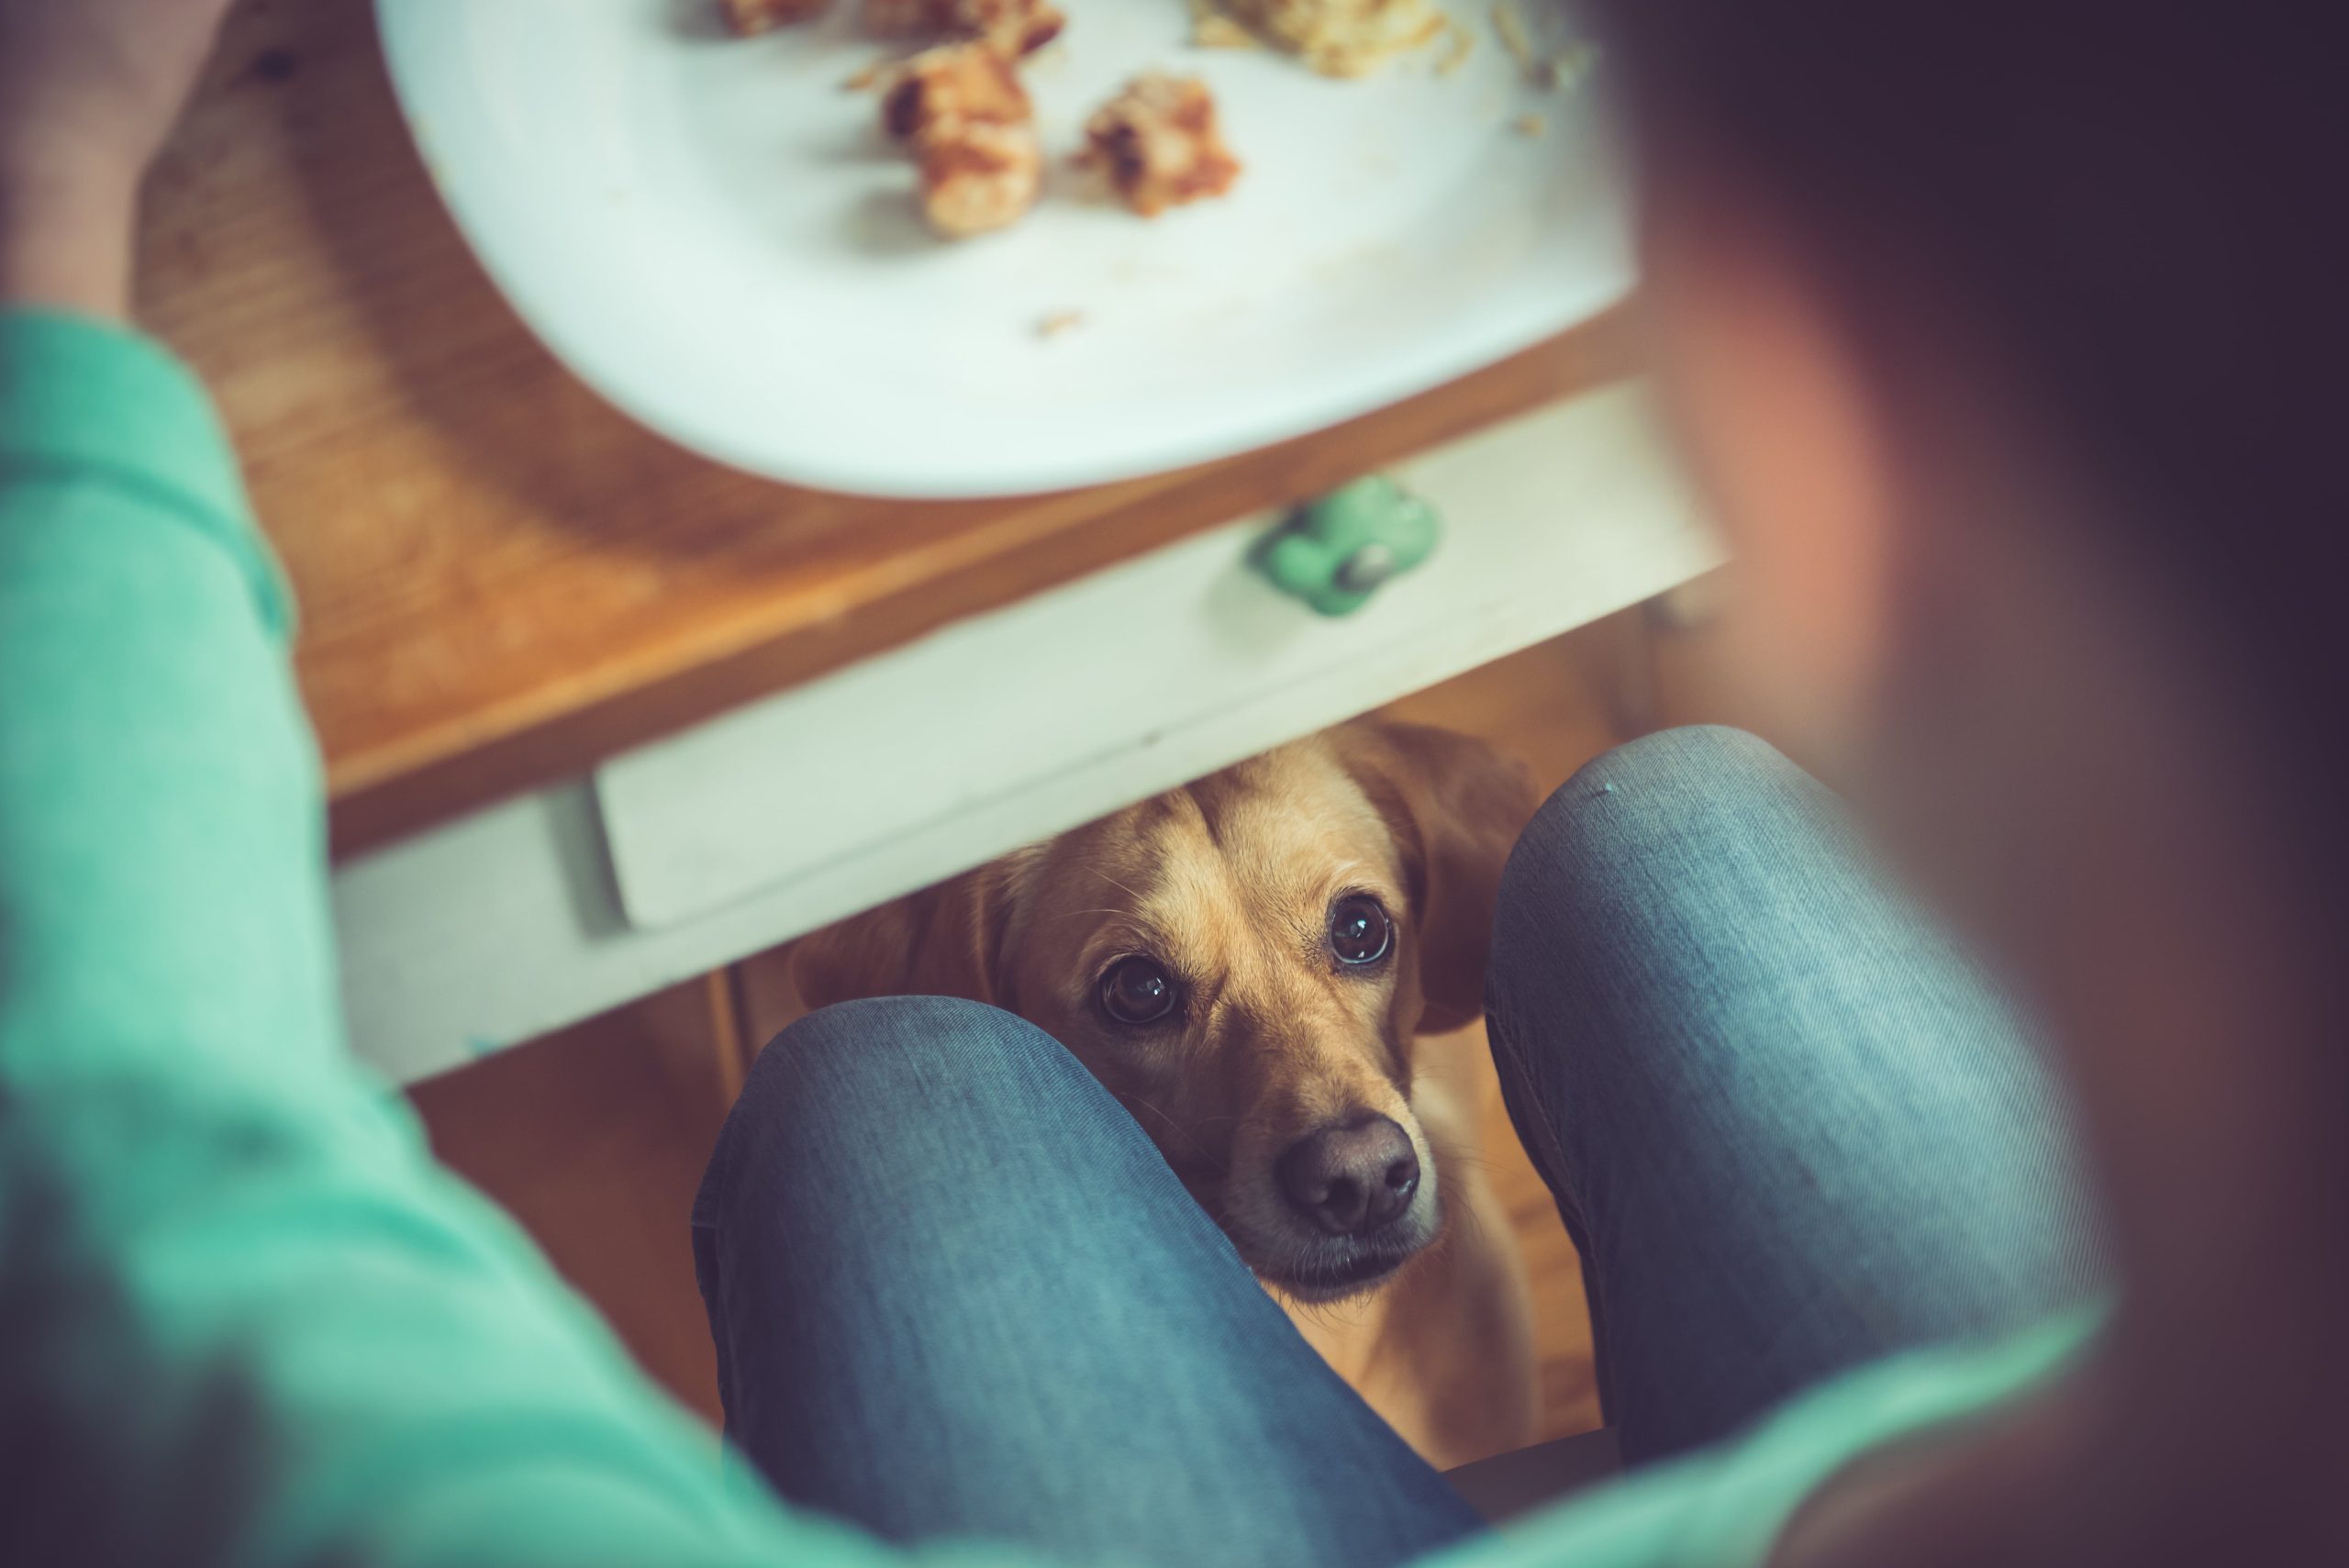 Ein Hund sitzt unter dem Tisch und schaut eine Frau an, die gerade etwas isst.